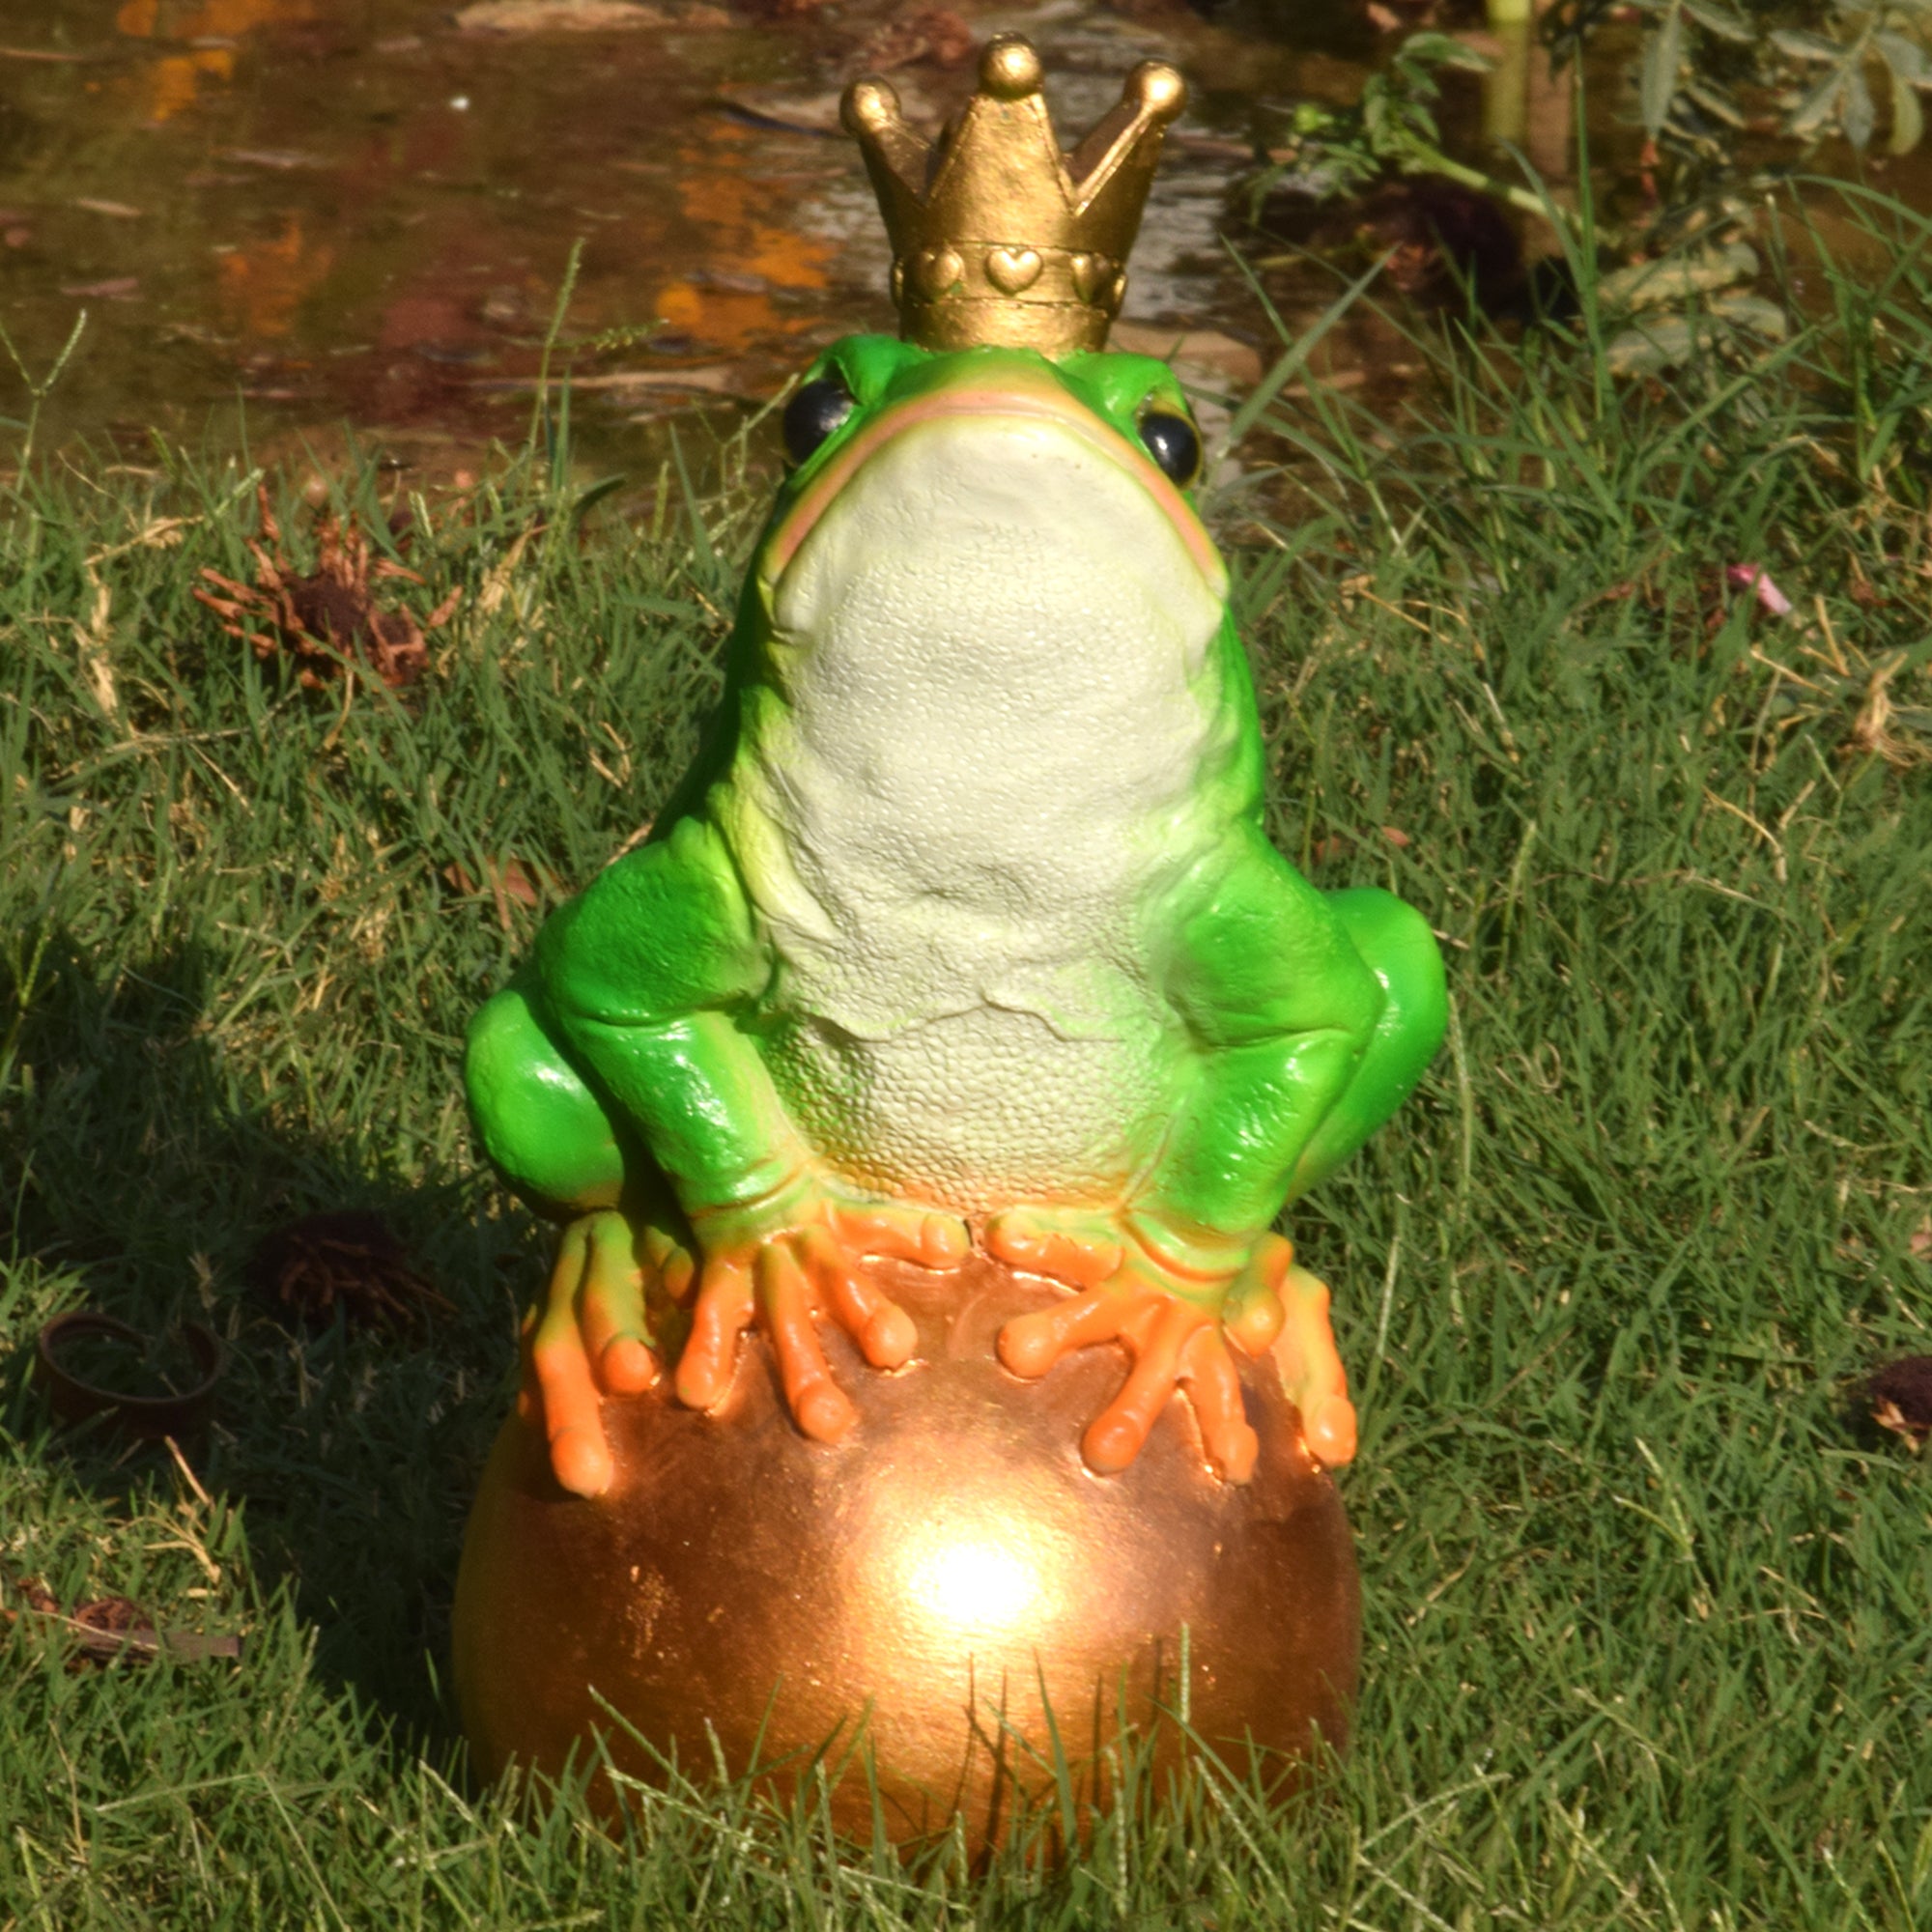 King frog on golden ball - myBageecha